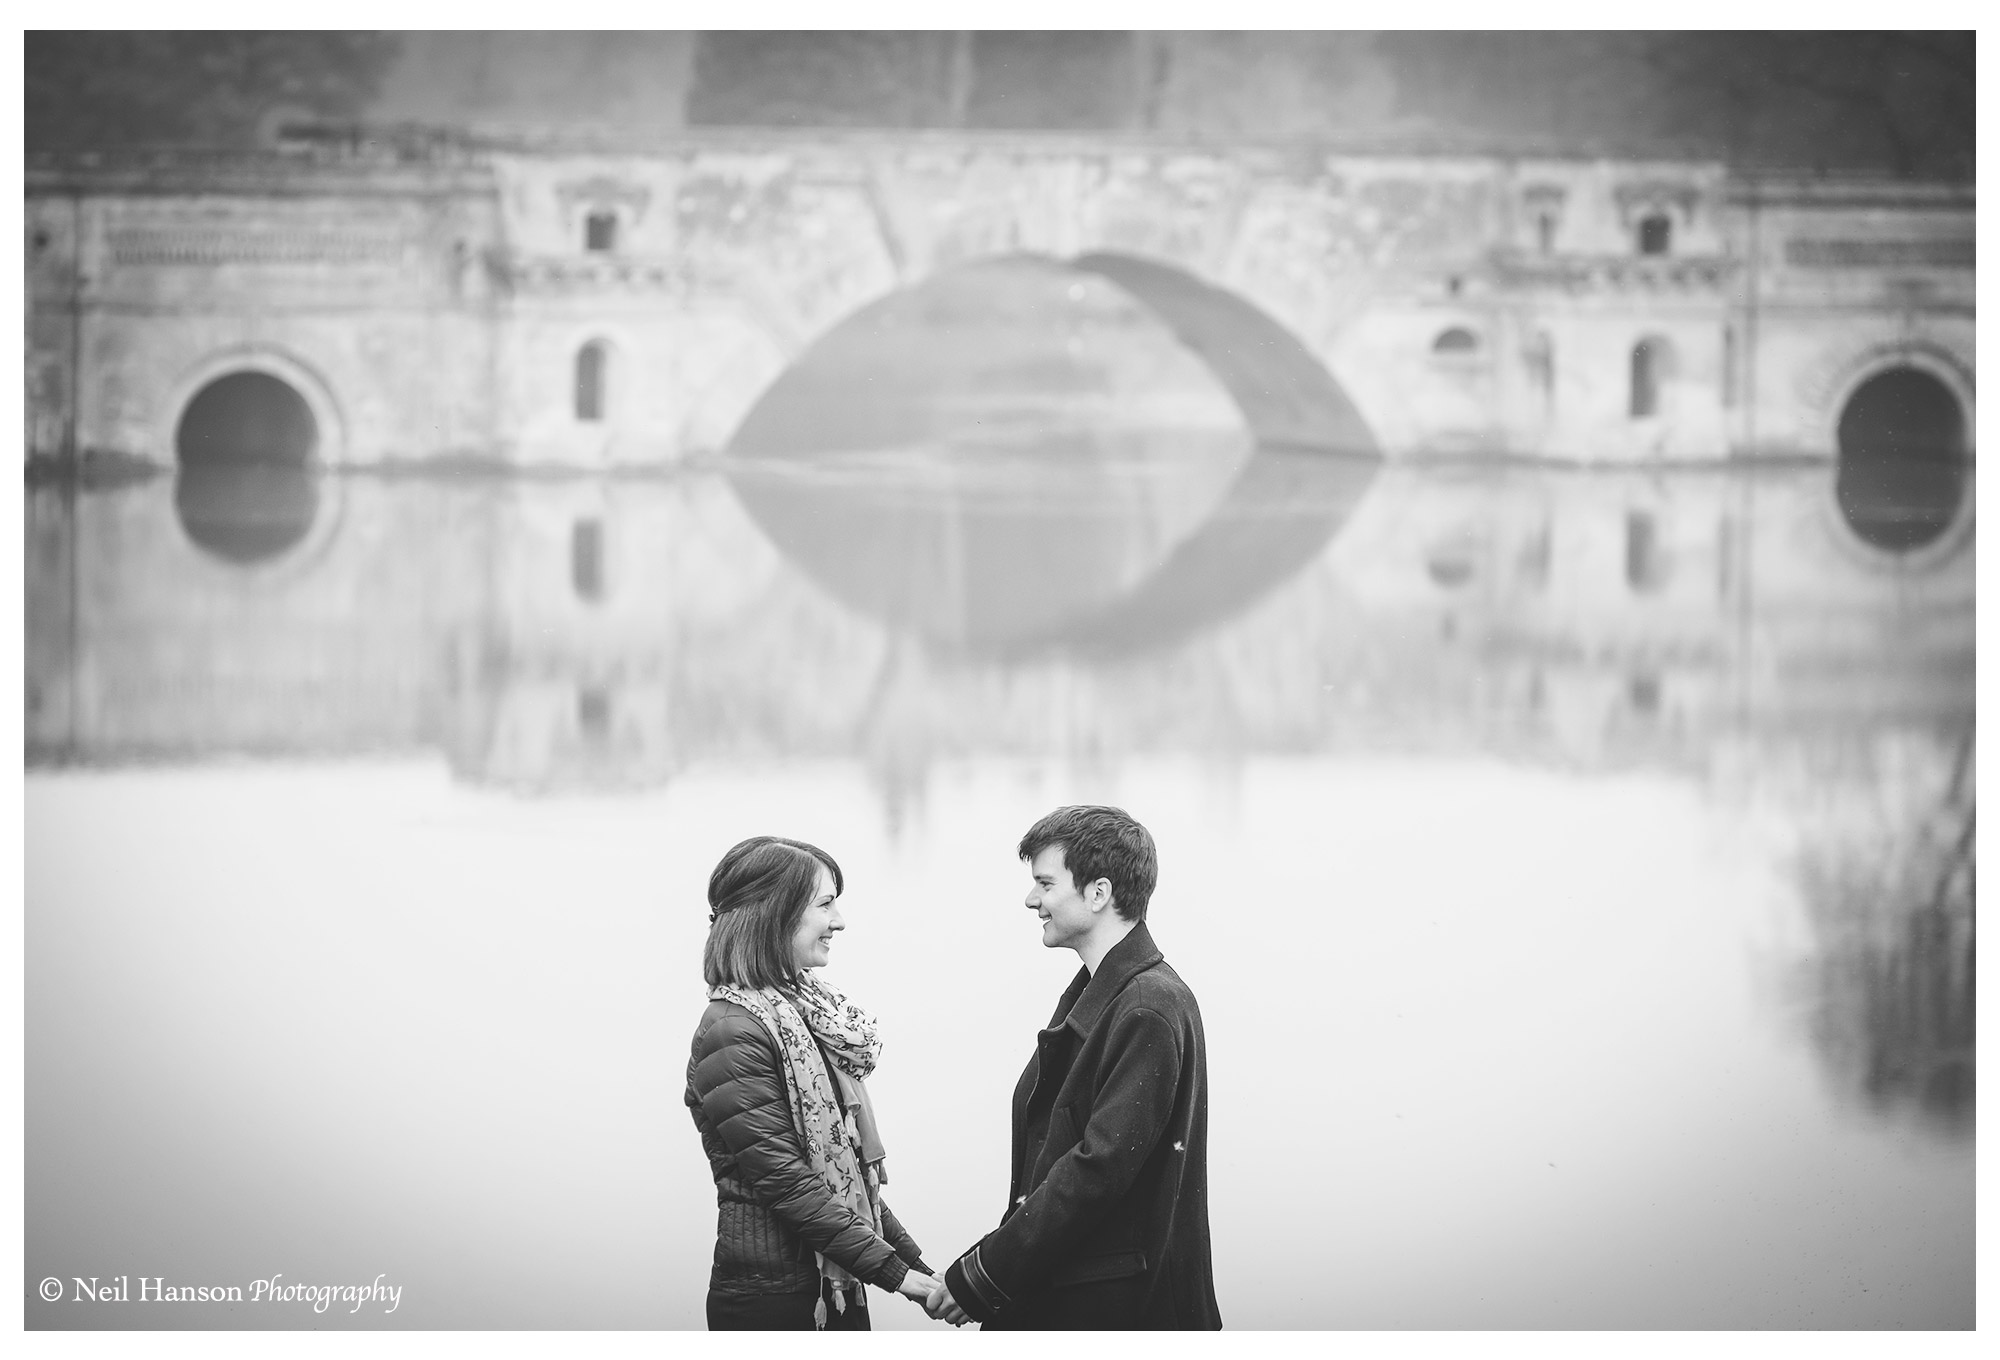 Engagement photoshoot at Blenheim Palace